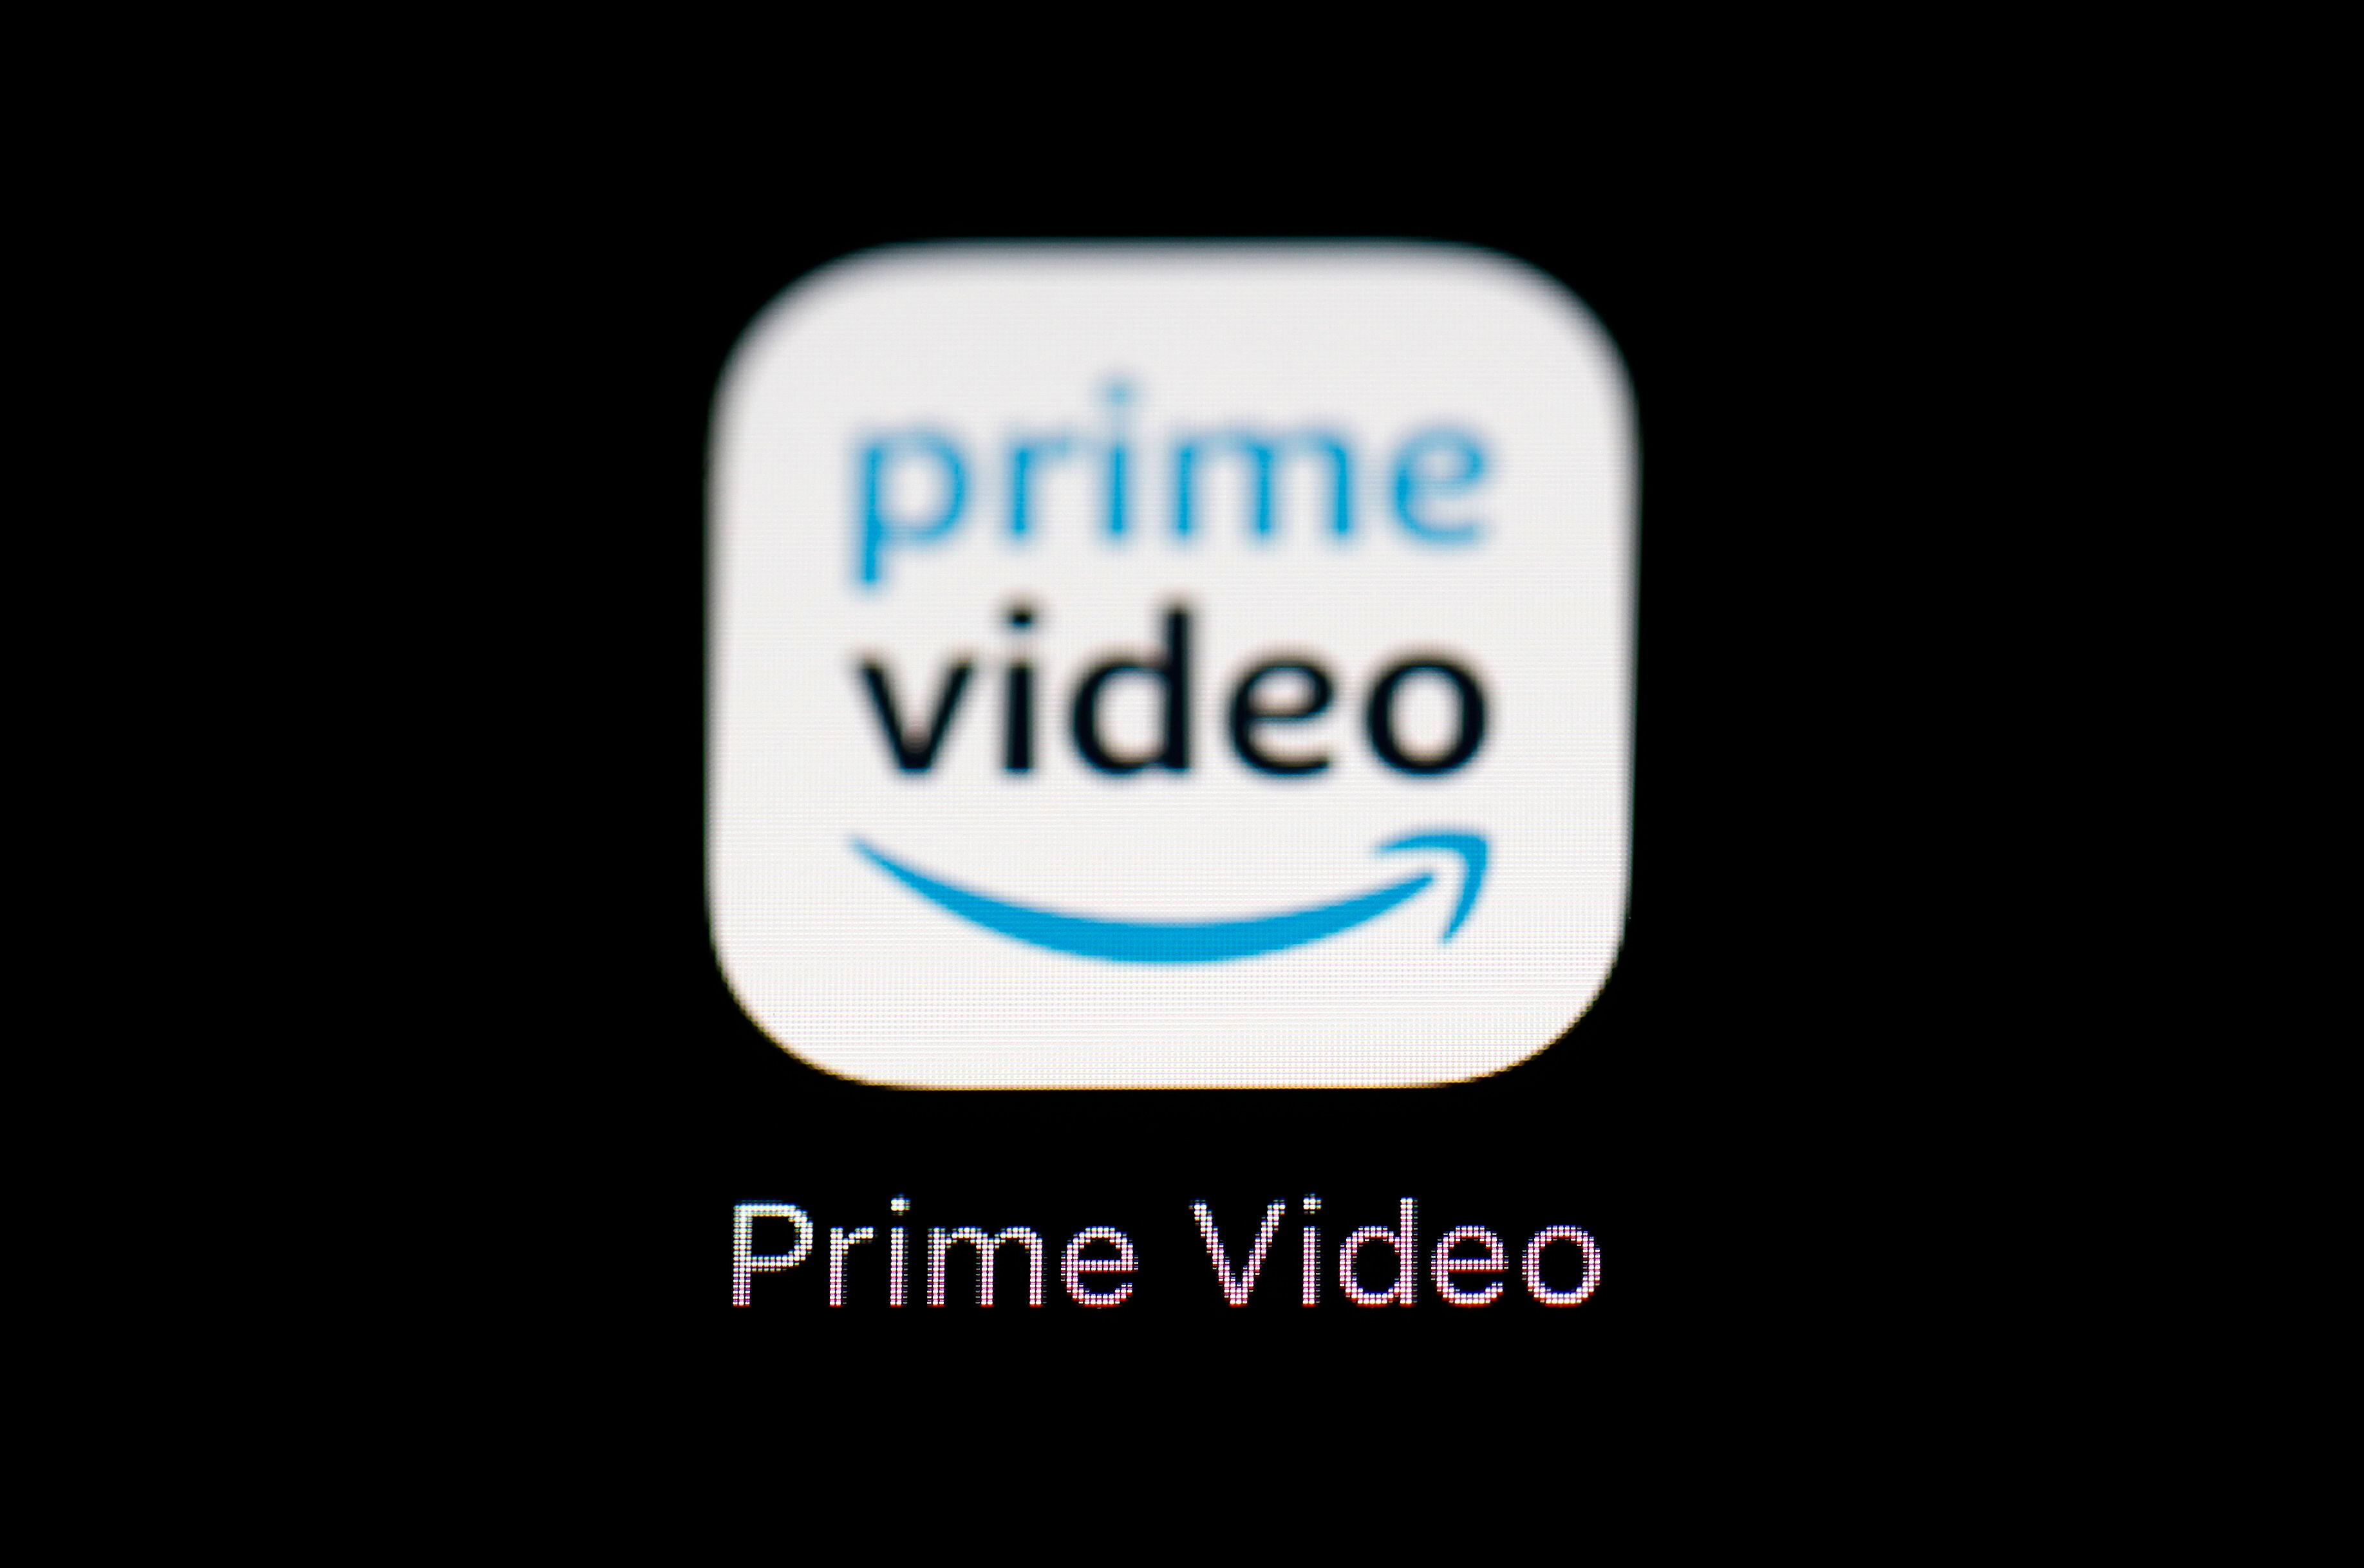 ARCHIVO - La aplicación de streaming Amazon Prime Video puede verse en la pantalla de un iPad, el 19 de marzo de 2018, en Baltimore. (AP Foto/Patrick Semansky, Archivo)